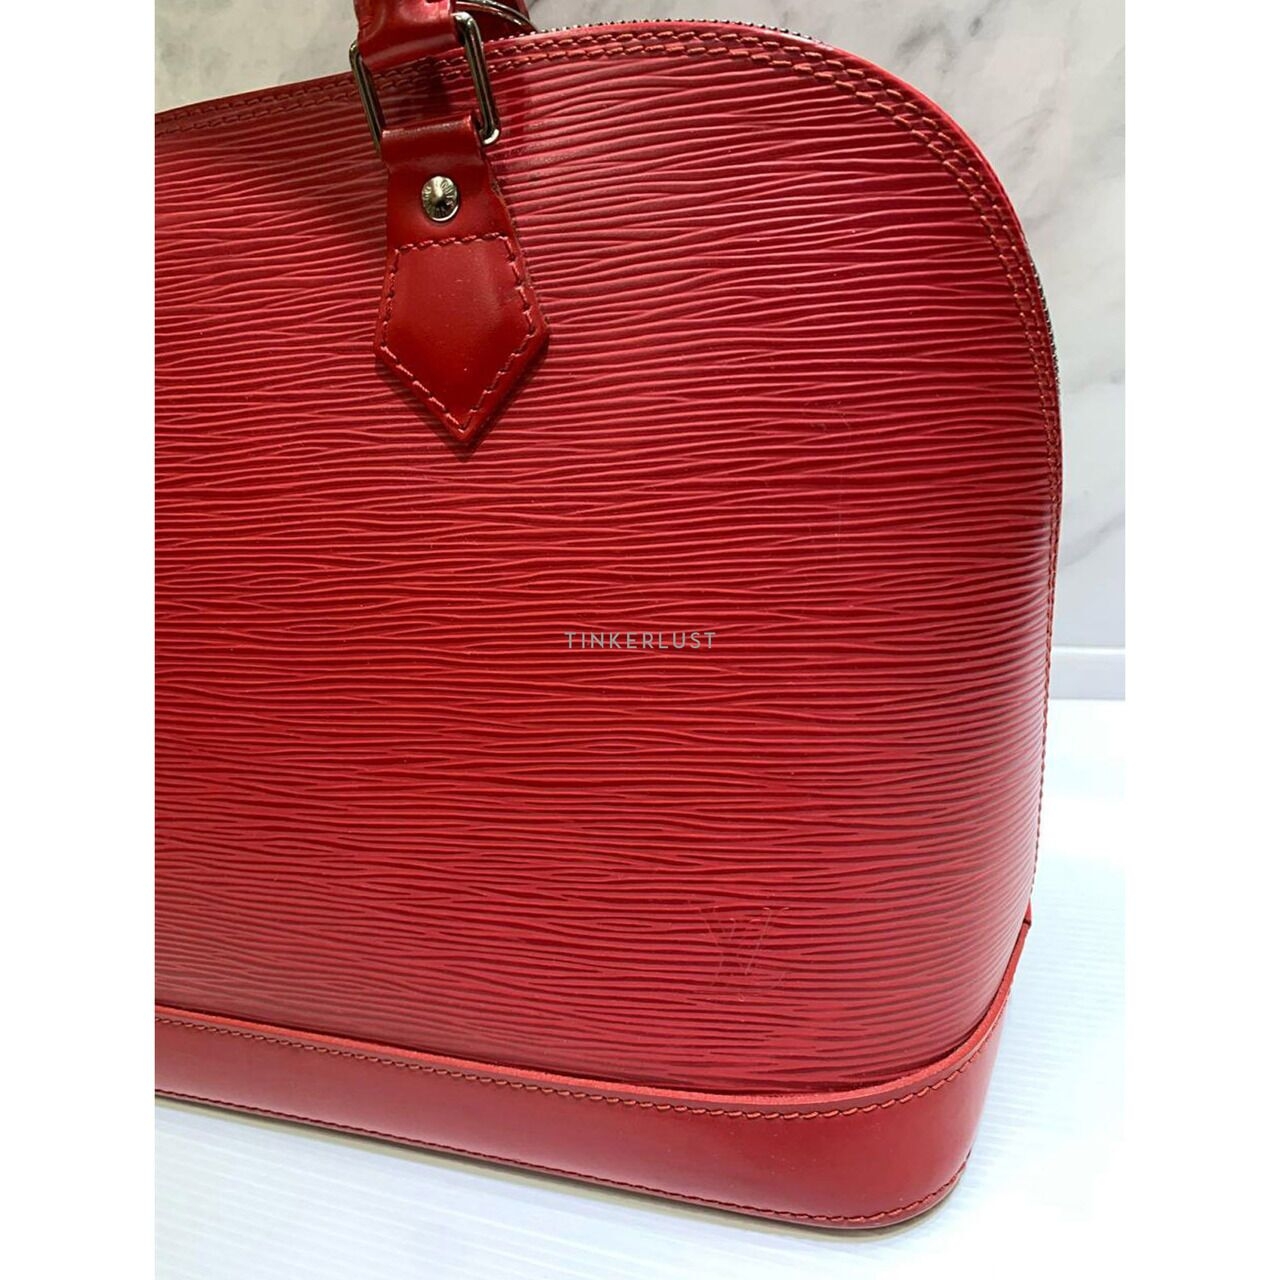 Louis Vuitton Alma PM Epi Leather Red 2006 Handbag